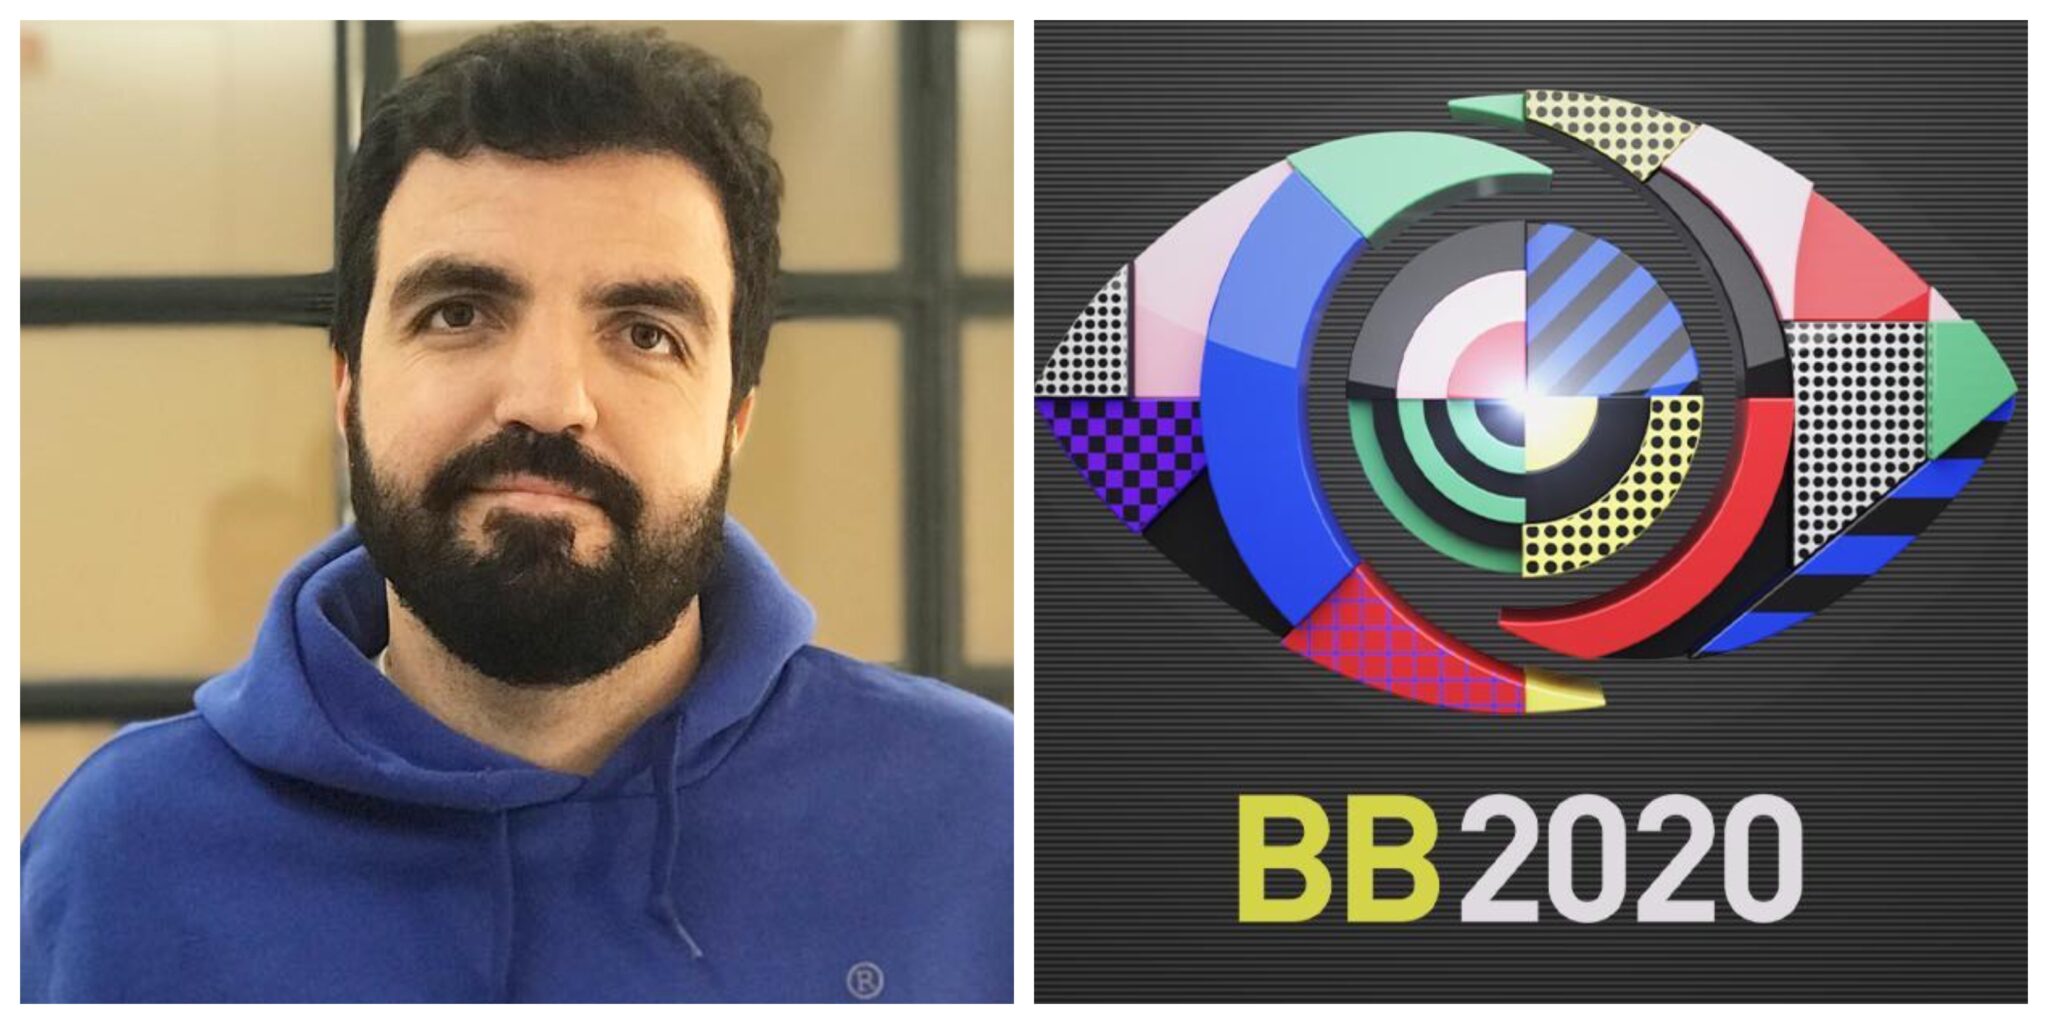 Salvador Martinha Big Brother Scaled Big Brother 2020. Salvador Martinha Ataca Tvi: &Quot;Deveria Chamar-Se De Bb Bullying&Quot;